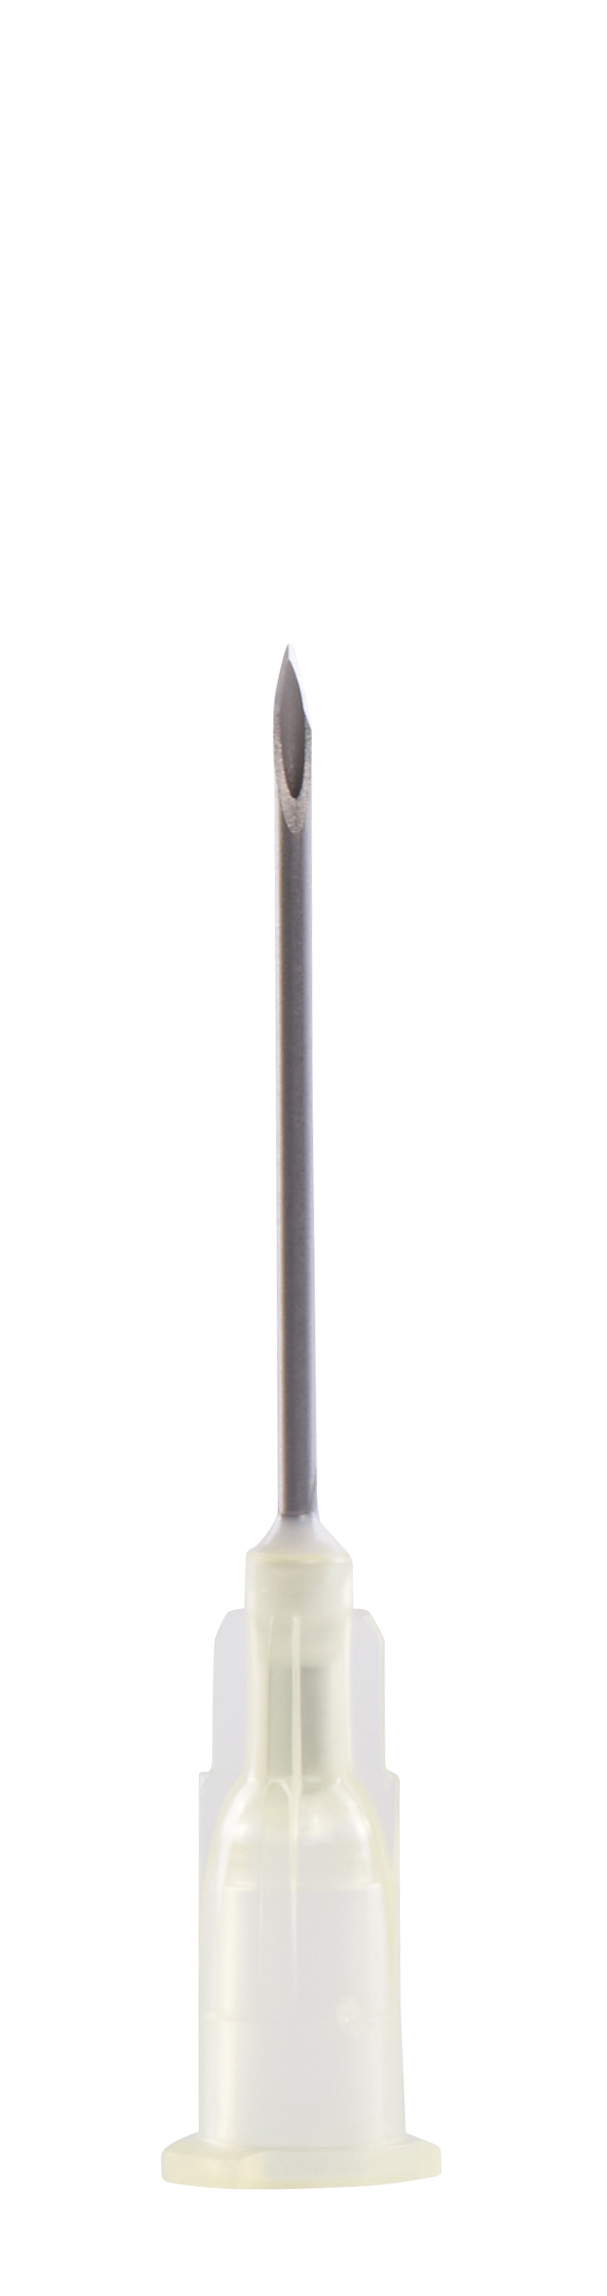 KRUUSE Disposable Needle, 1.1 x 25 mm, 19G x 1, white, 100/pk